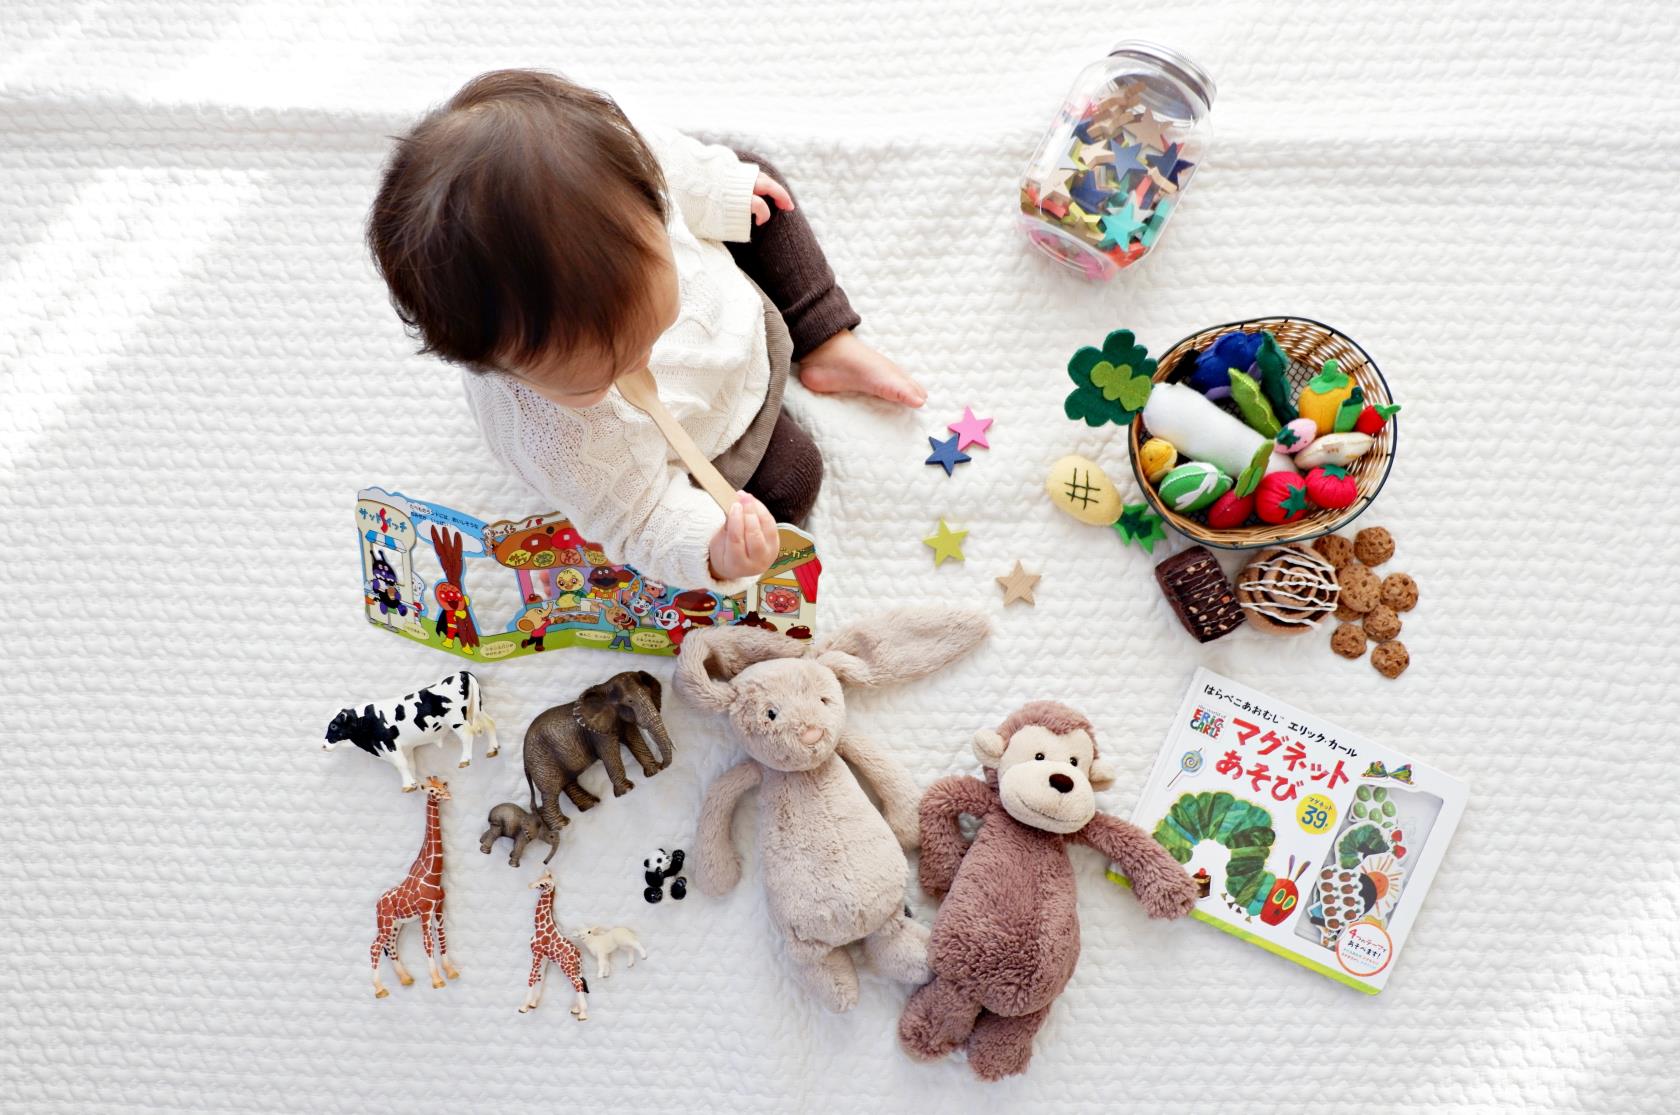 Barn, spädbarn, sitter på matta bland leksaker